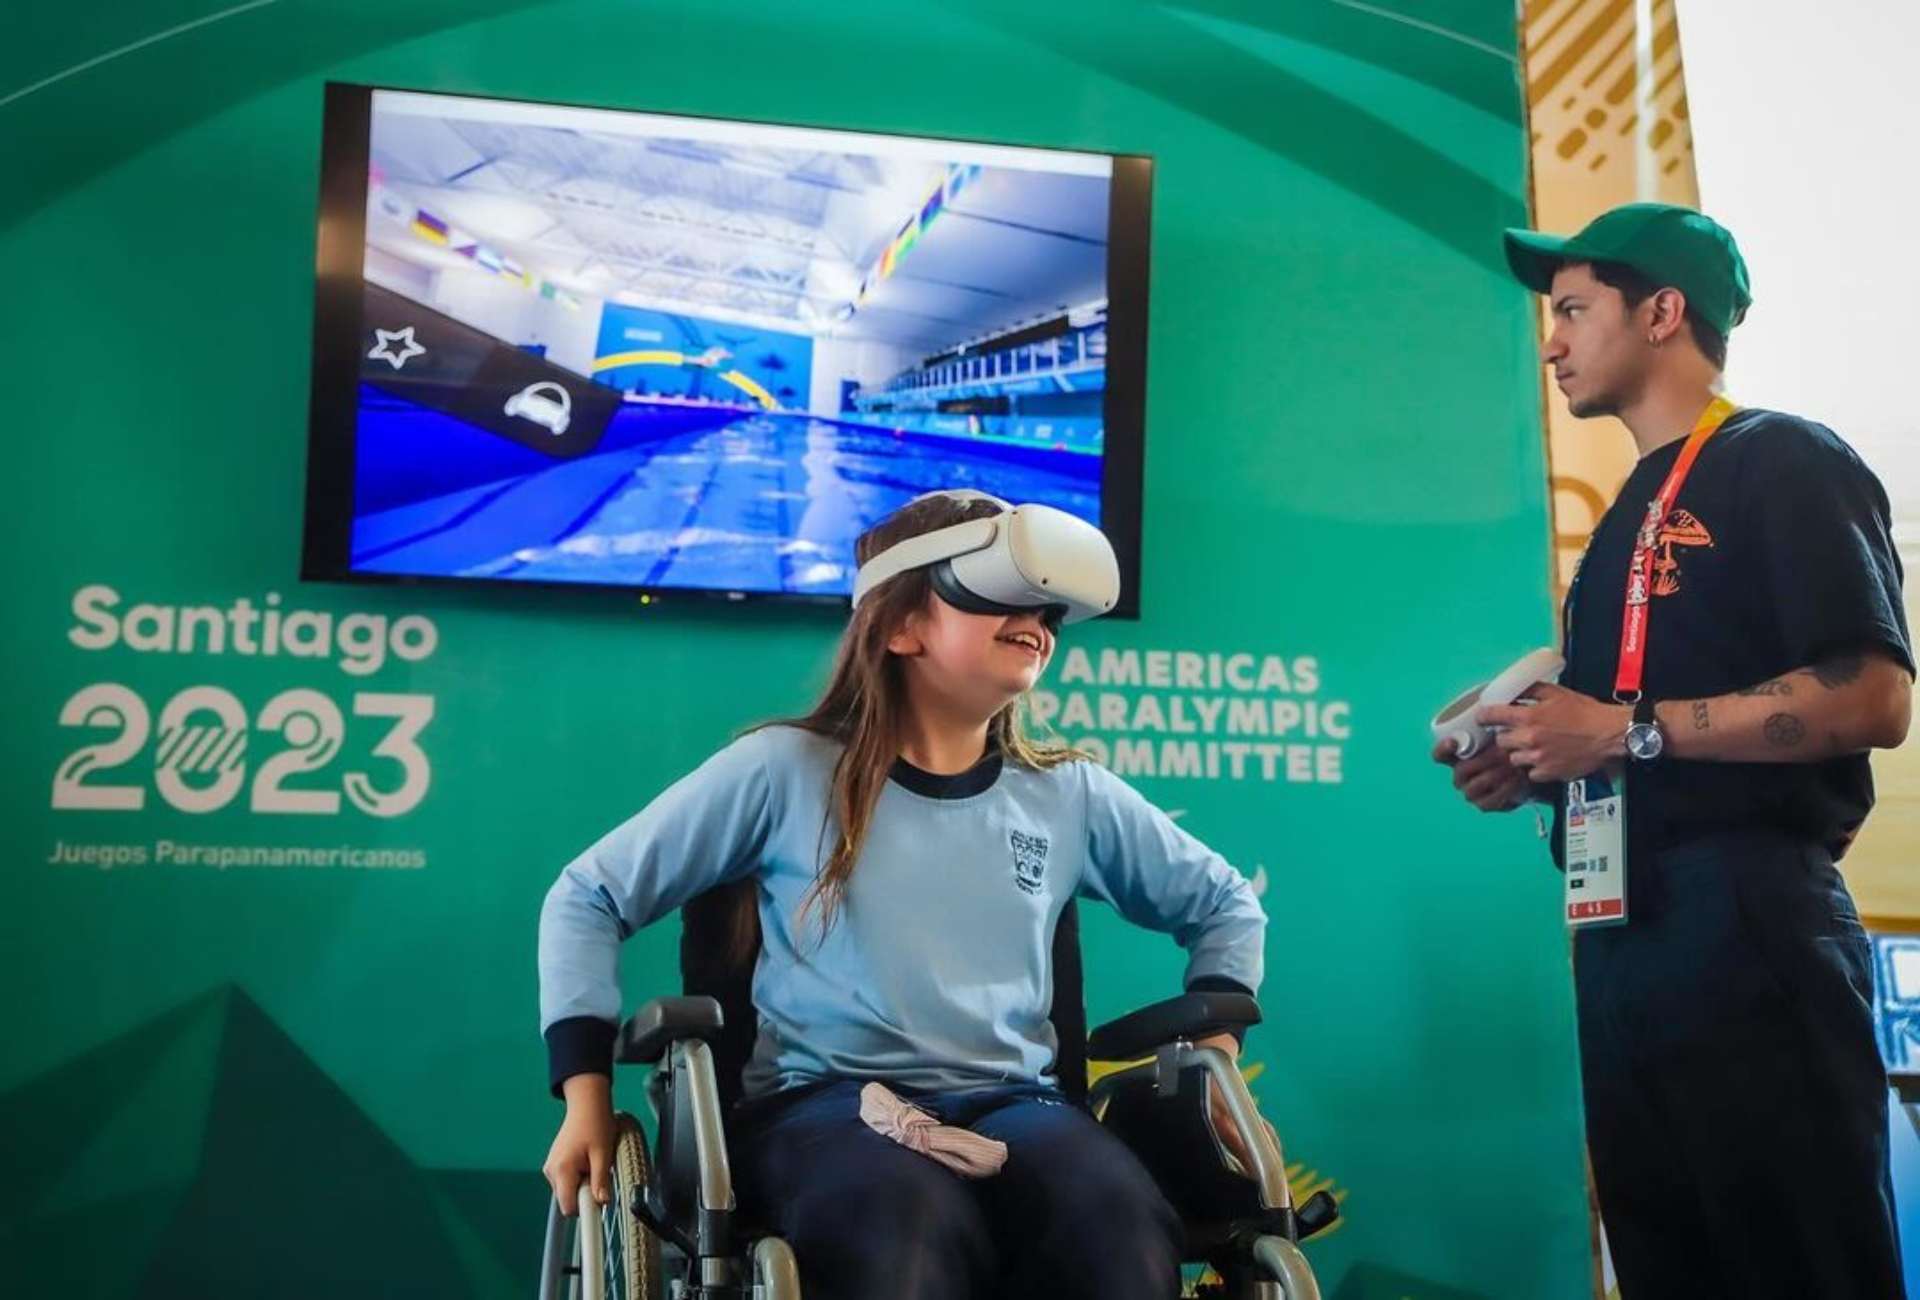 ¡Viva la inclusión! Sumérgete en los deportes parapanamericanos con la realidad virtual